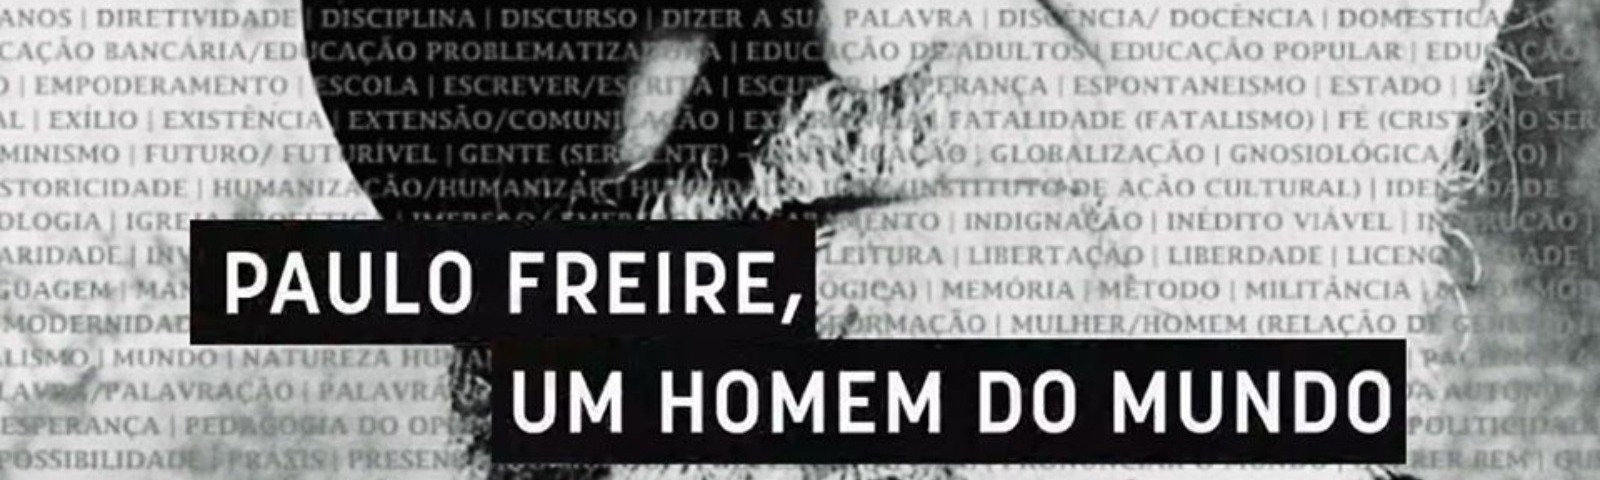 Série sobre Paulo Freire está disponível on demand